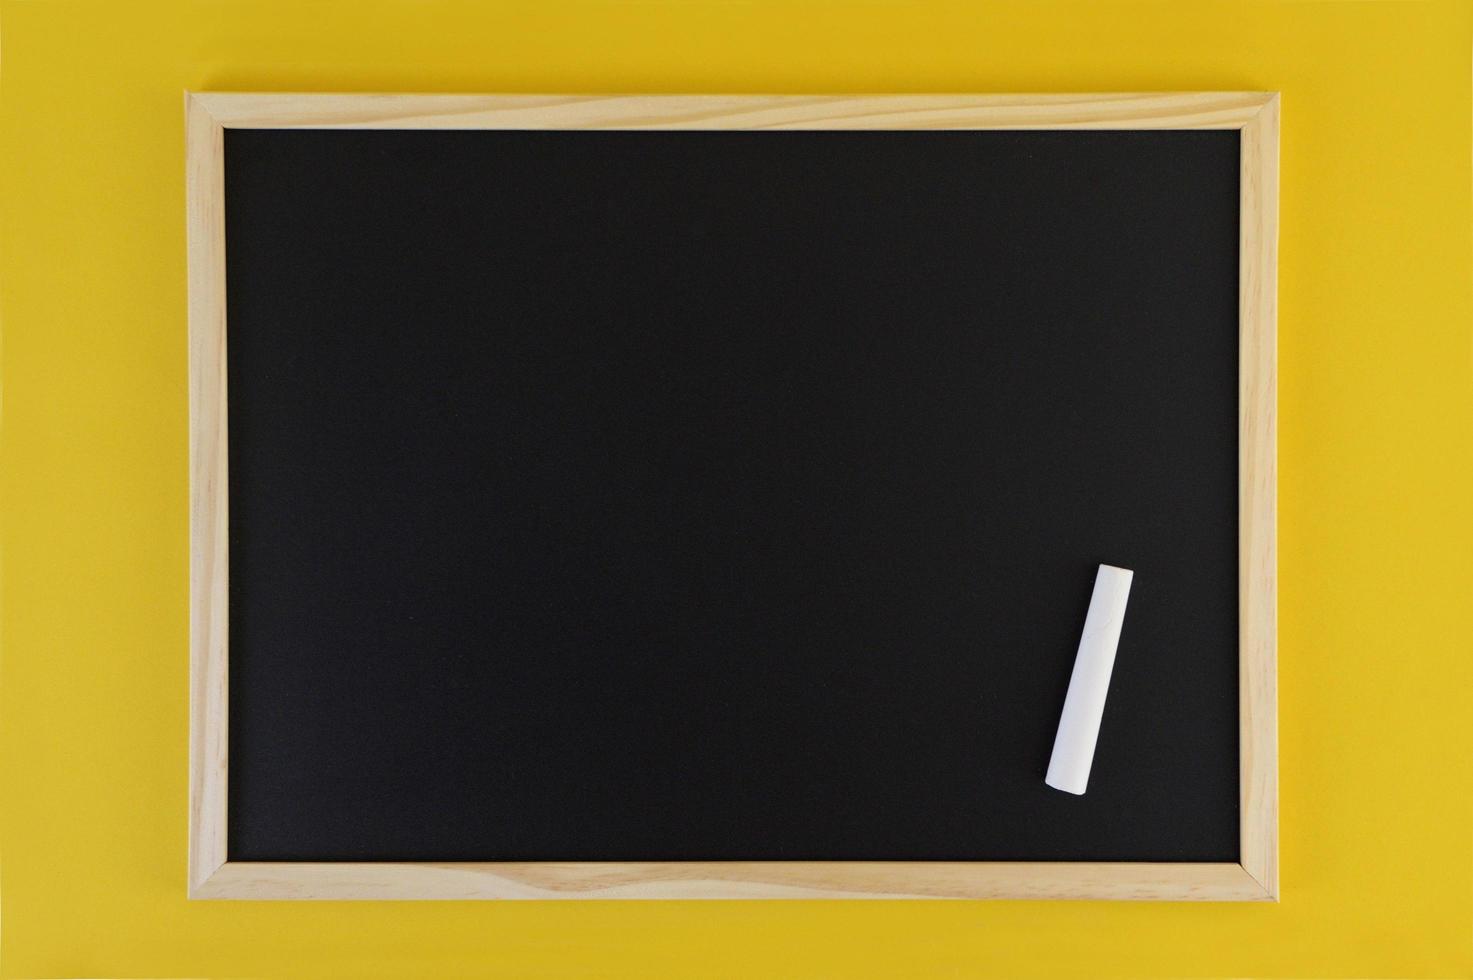 pizarra negra vacía sobre fondo amarillo. vista frontal en pizarra negra con marco de madera. espacio de copia vacío en panel plano. foto